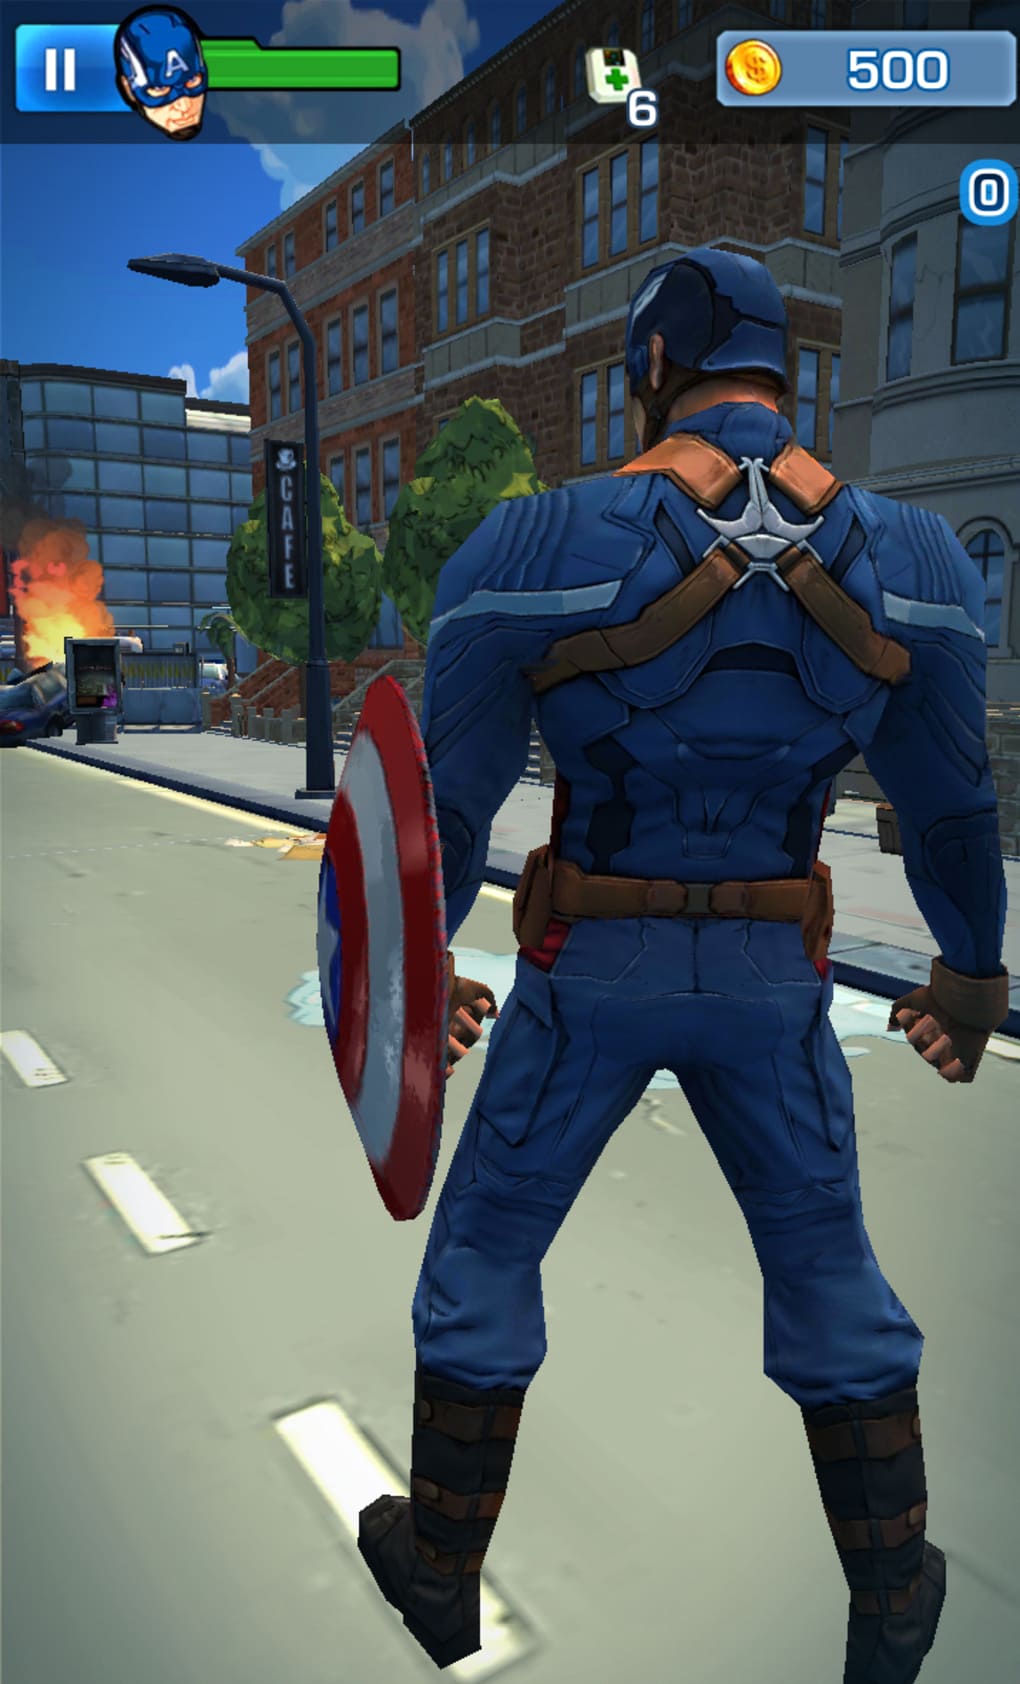 Jogos para Android: Capitão América 2, Jogo do Cascão e outros top